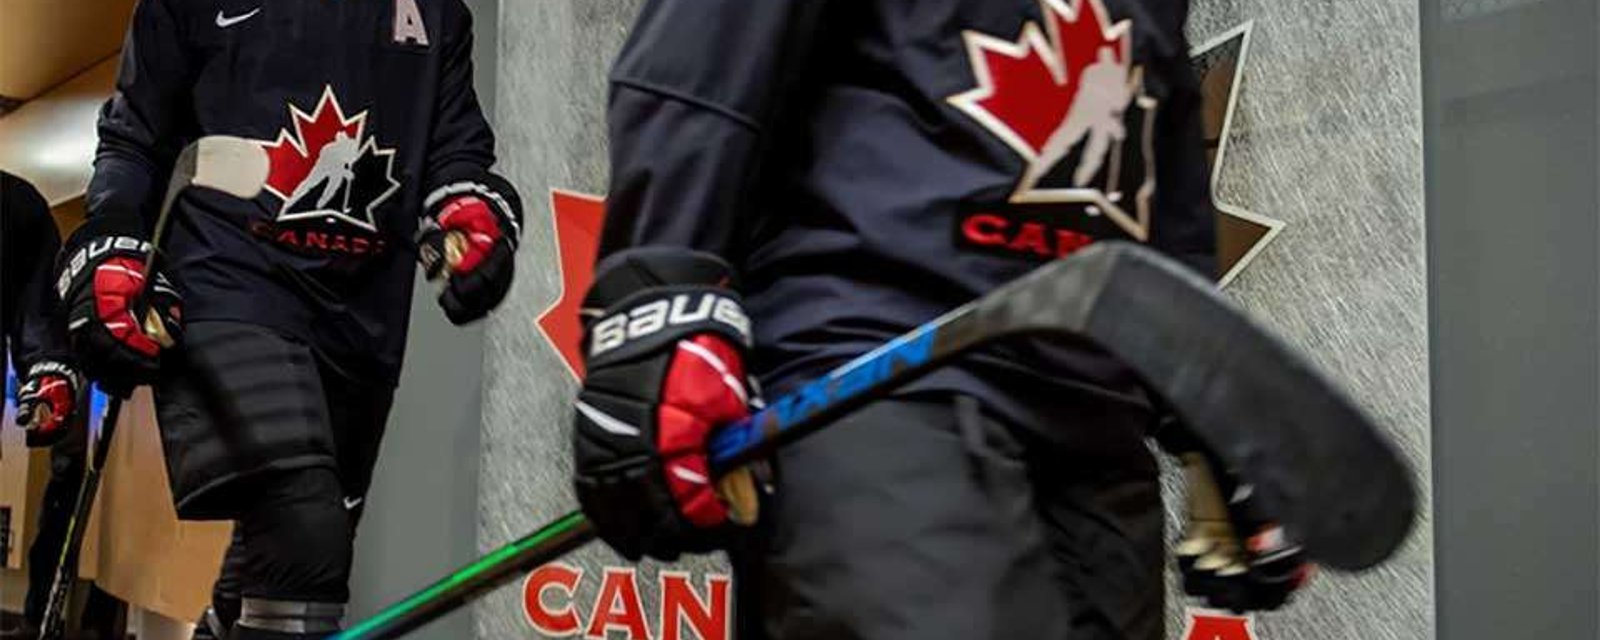 8 joueurs de Team Canada accusés d'une agression sexuelle en groupe